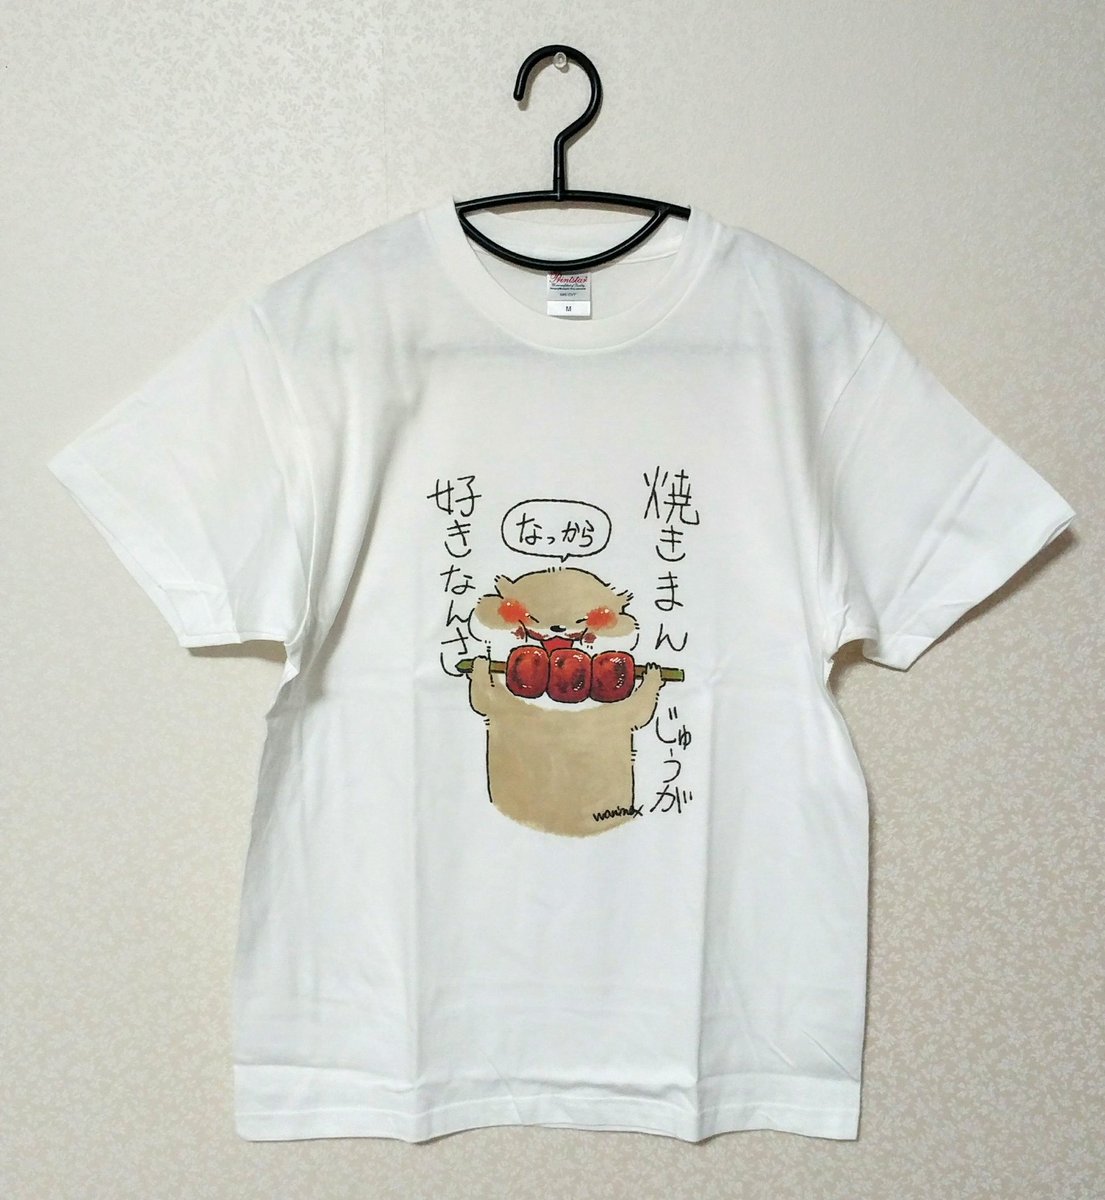 新しい焼きまんじゅうTシャツ出来上がりました✨
こちらは、紅茶のティーストアー様にて開催される個展にて販売致します✨

サイズはM・L
価格は2,500円 